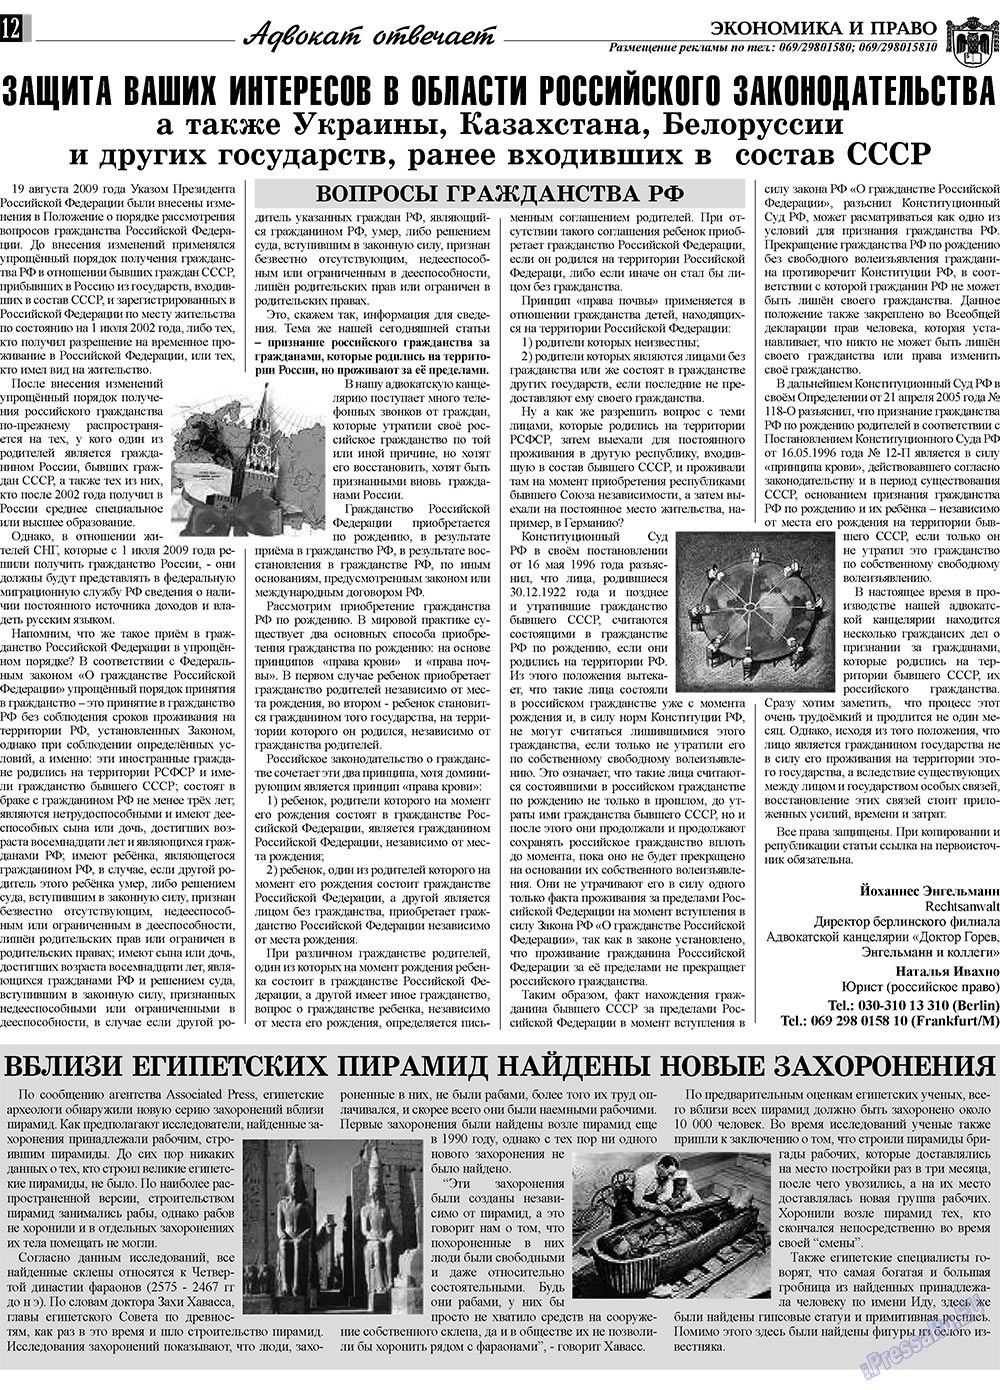 Экономика и право, газета. 2010 №2 стр.12